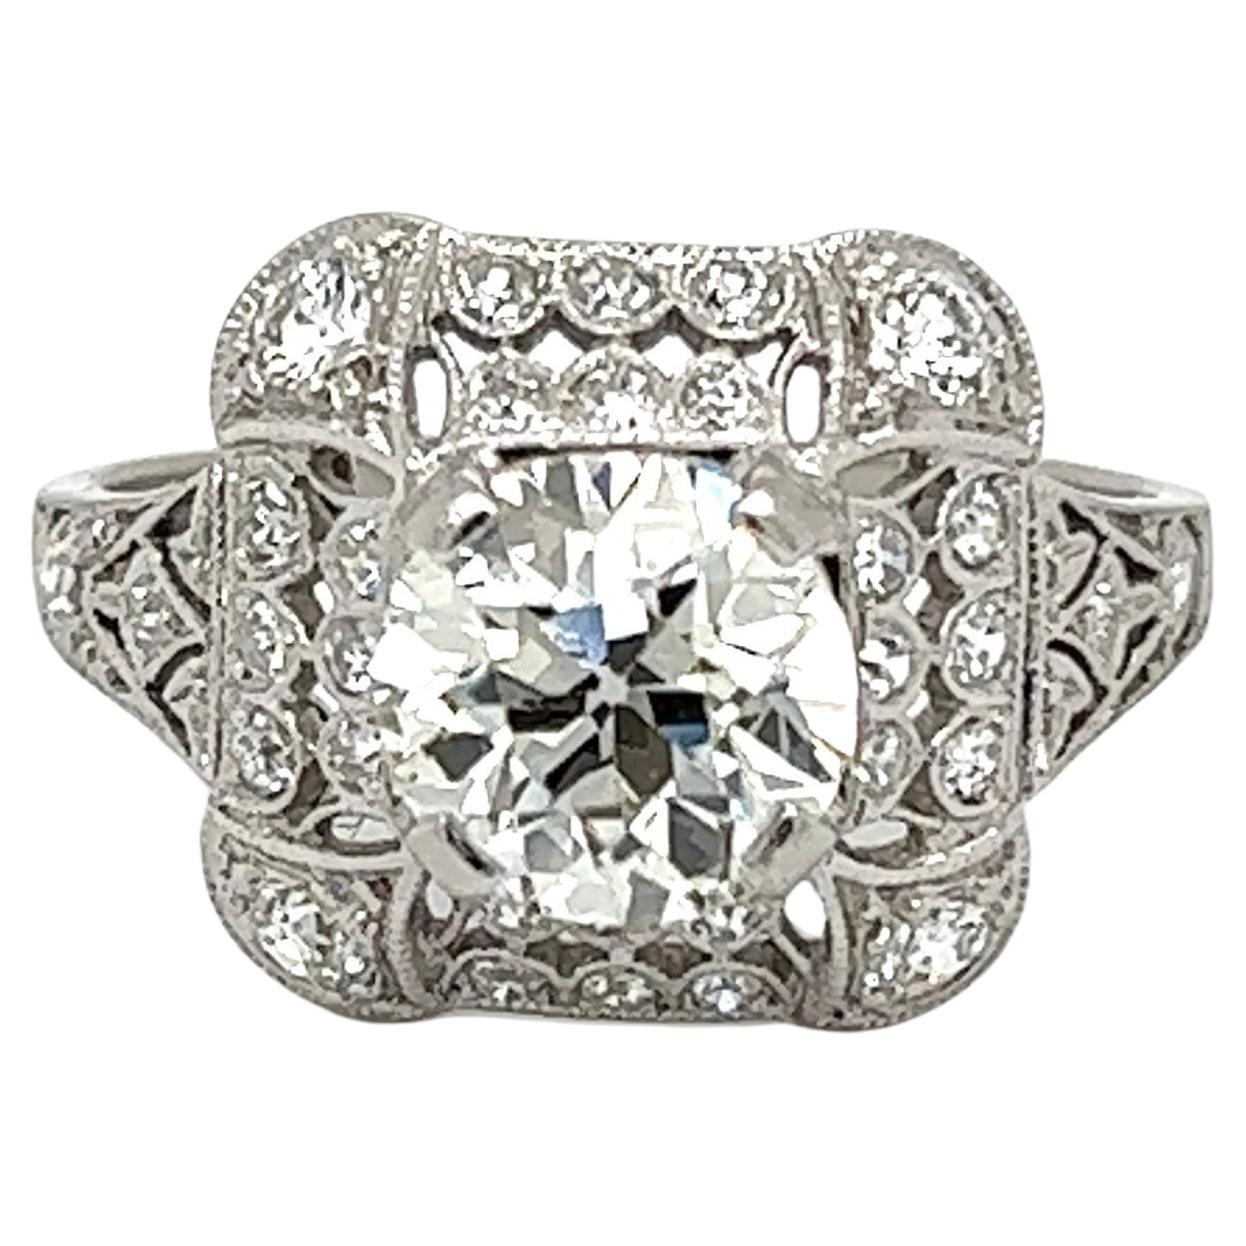 1.31 Carat Diamond Solitaire Art Deco Platinum Ring Estate Fine Jewelry